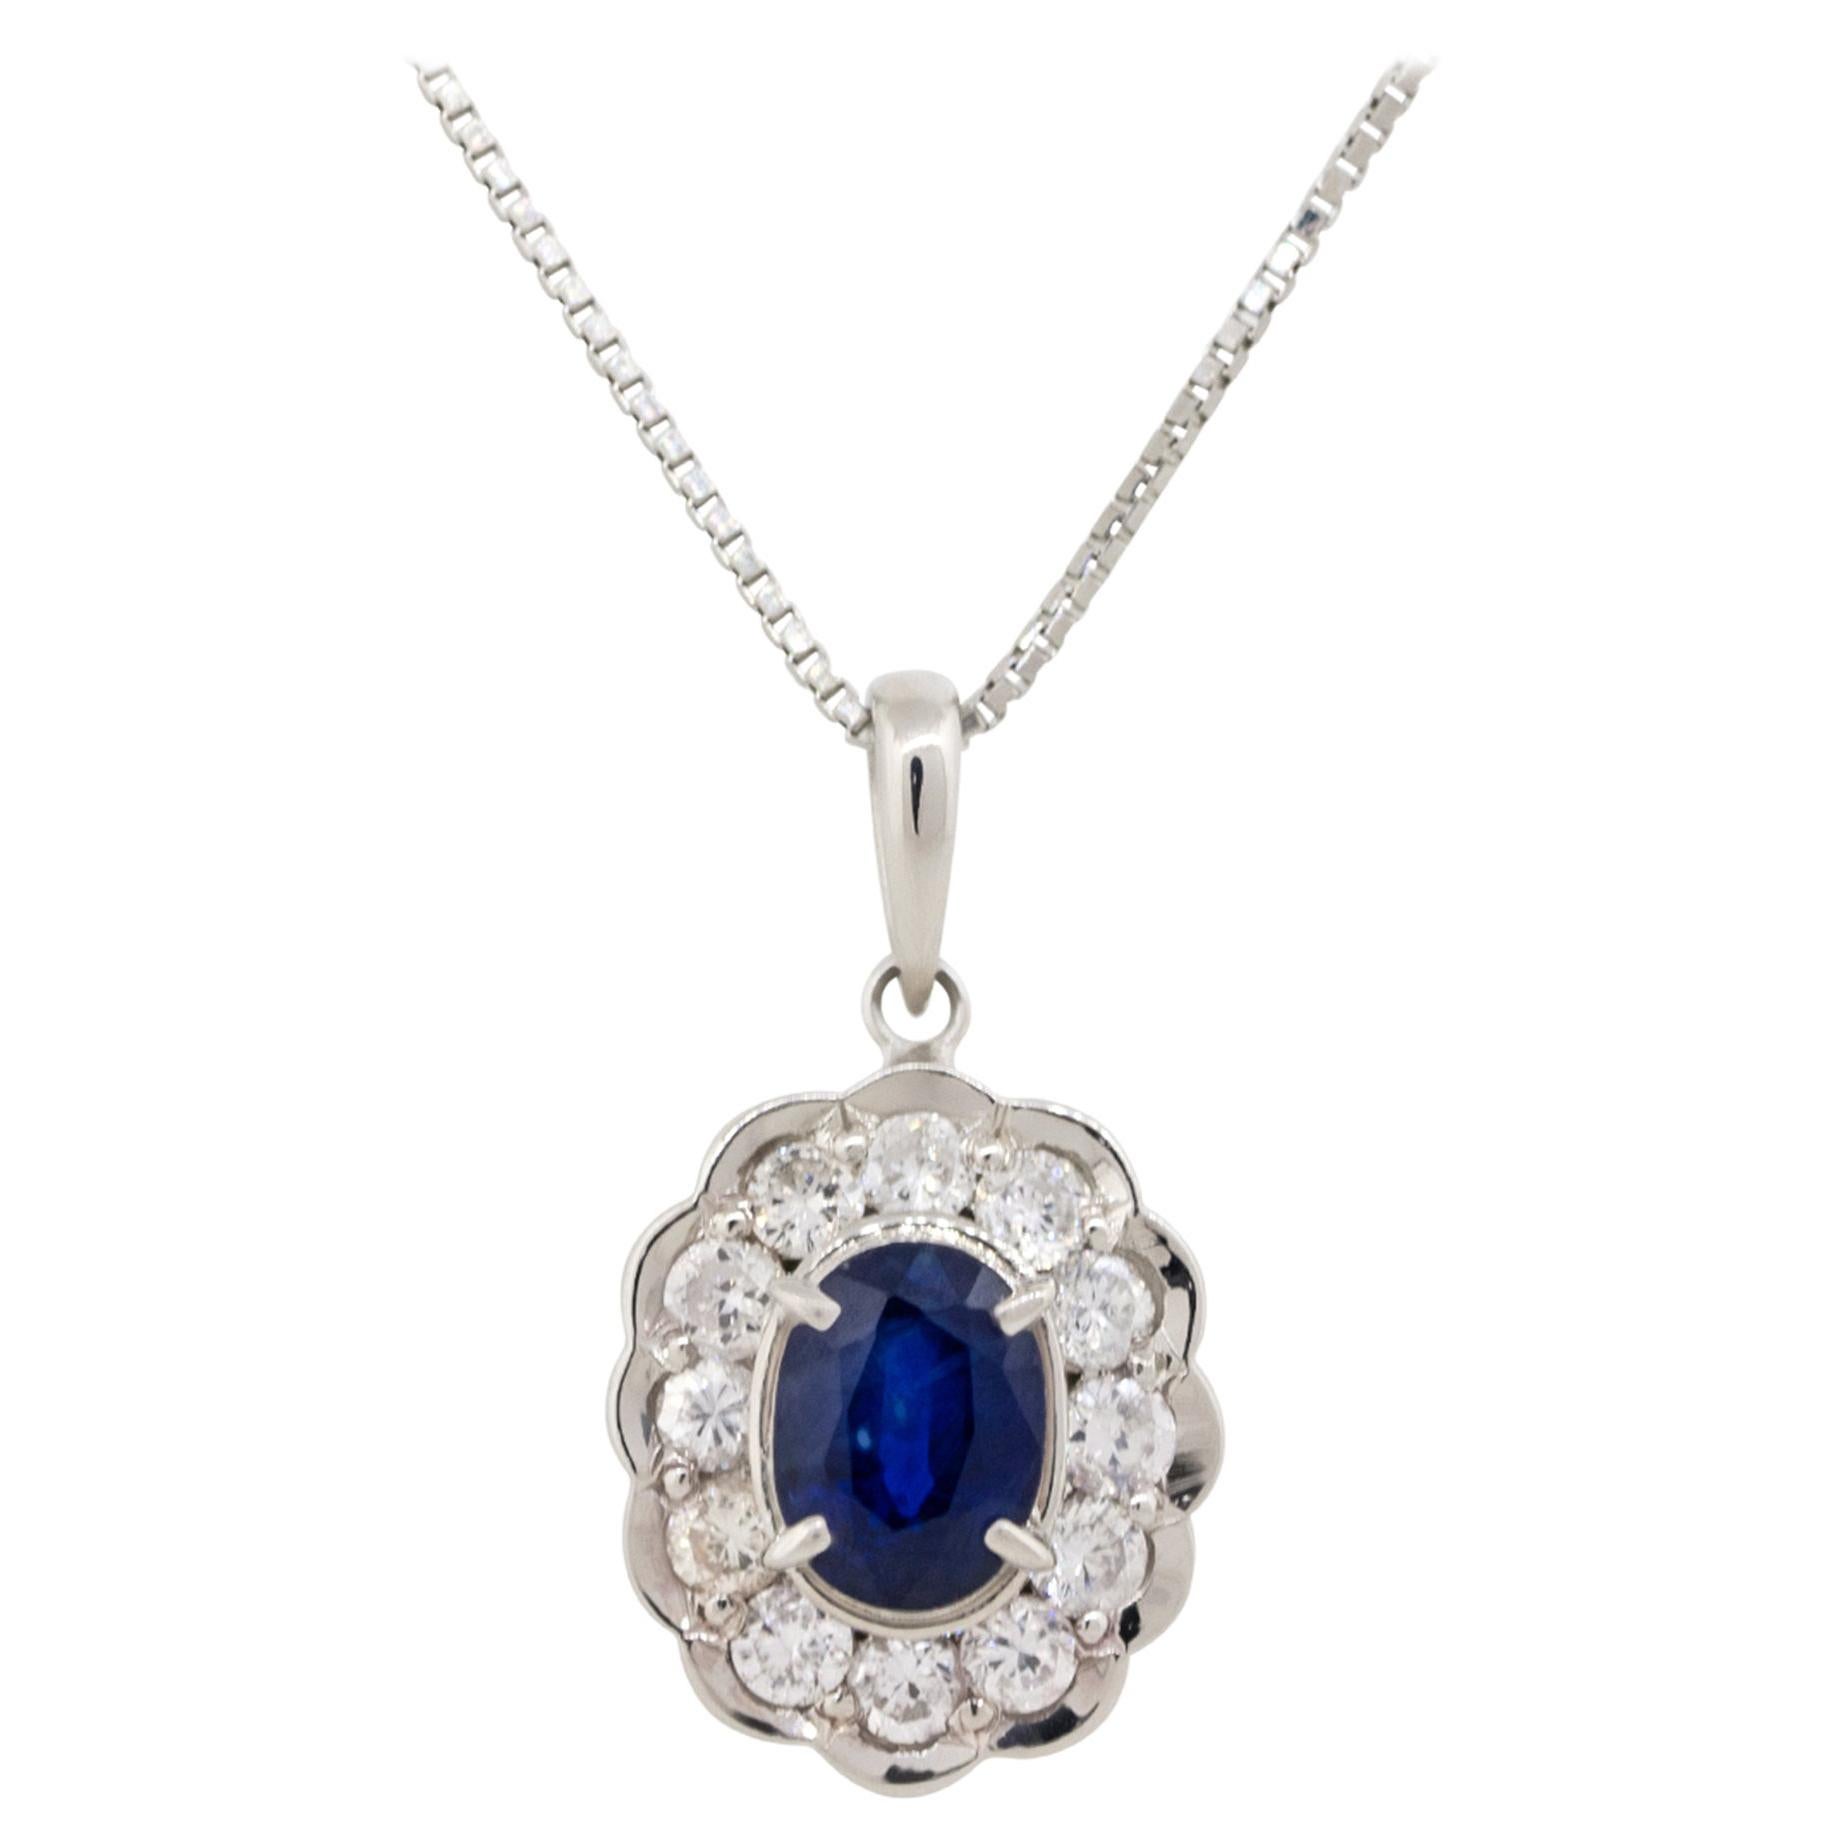 1.37 Carat Oval Cut Sapphire Pendant Necklace with Diamonds Platinum